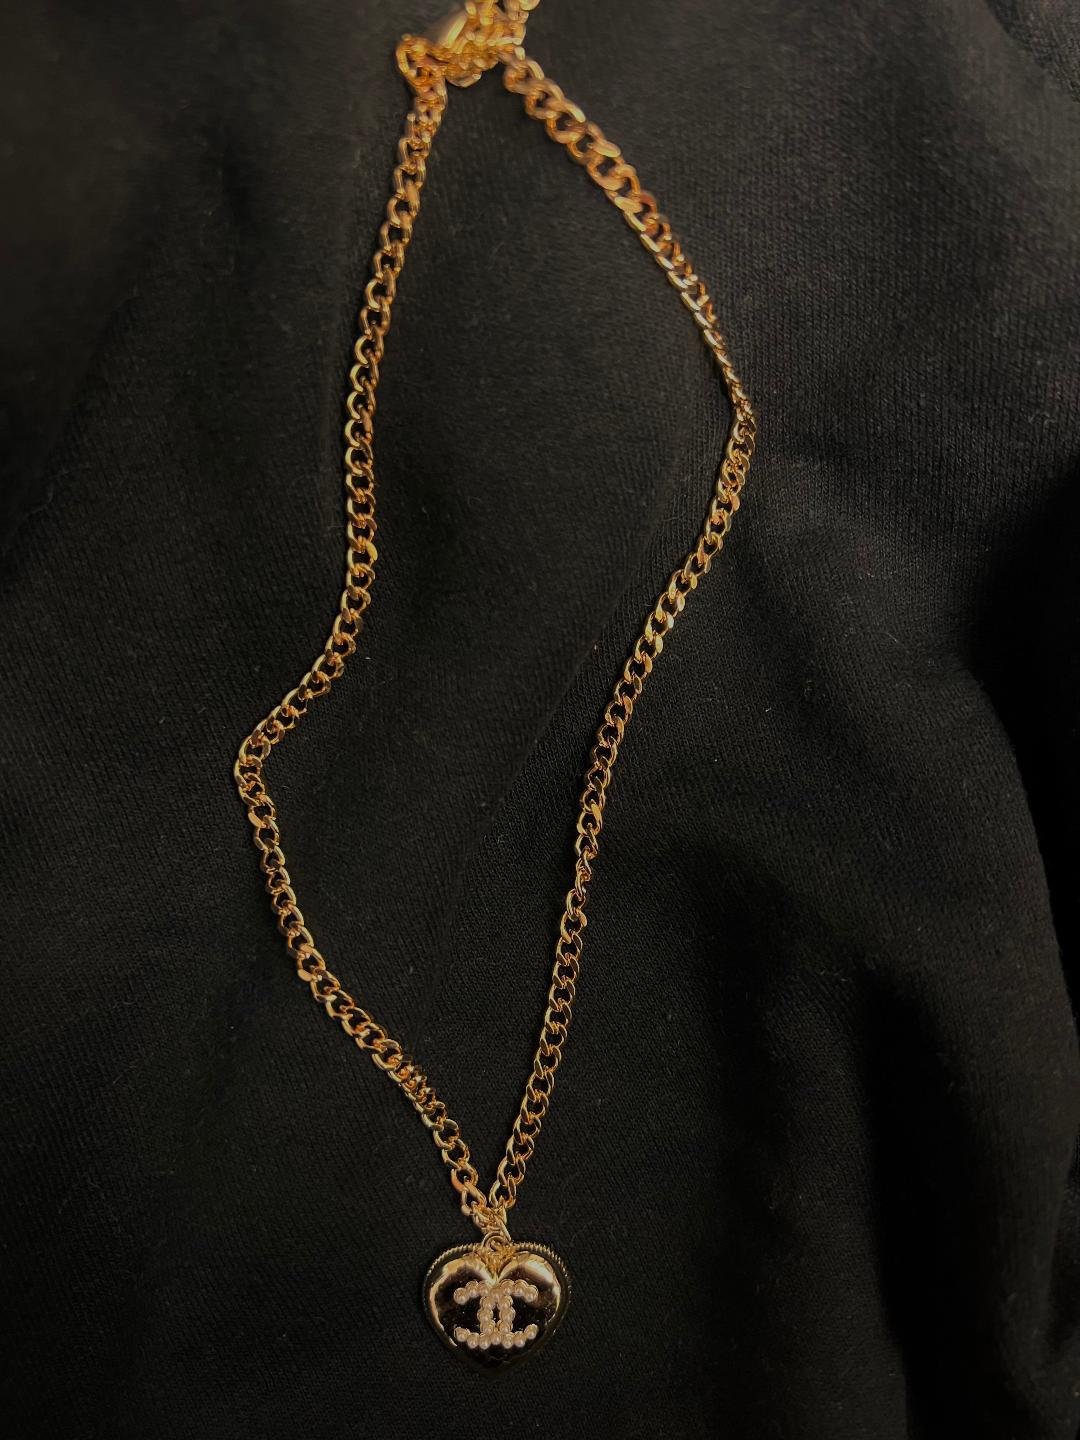 J Nicole $105 Necklace